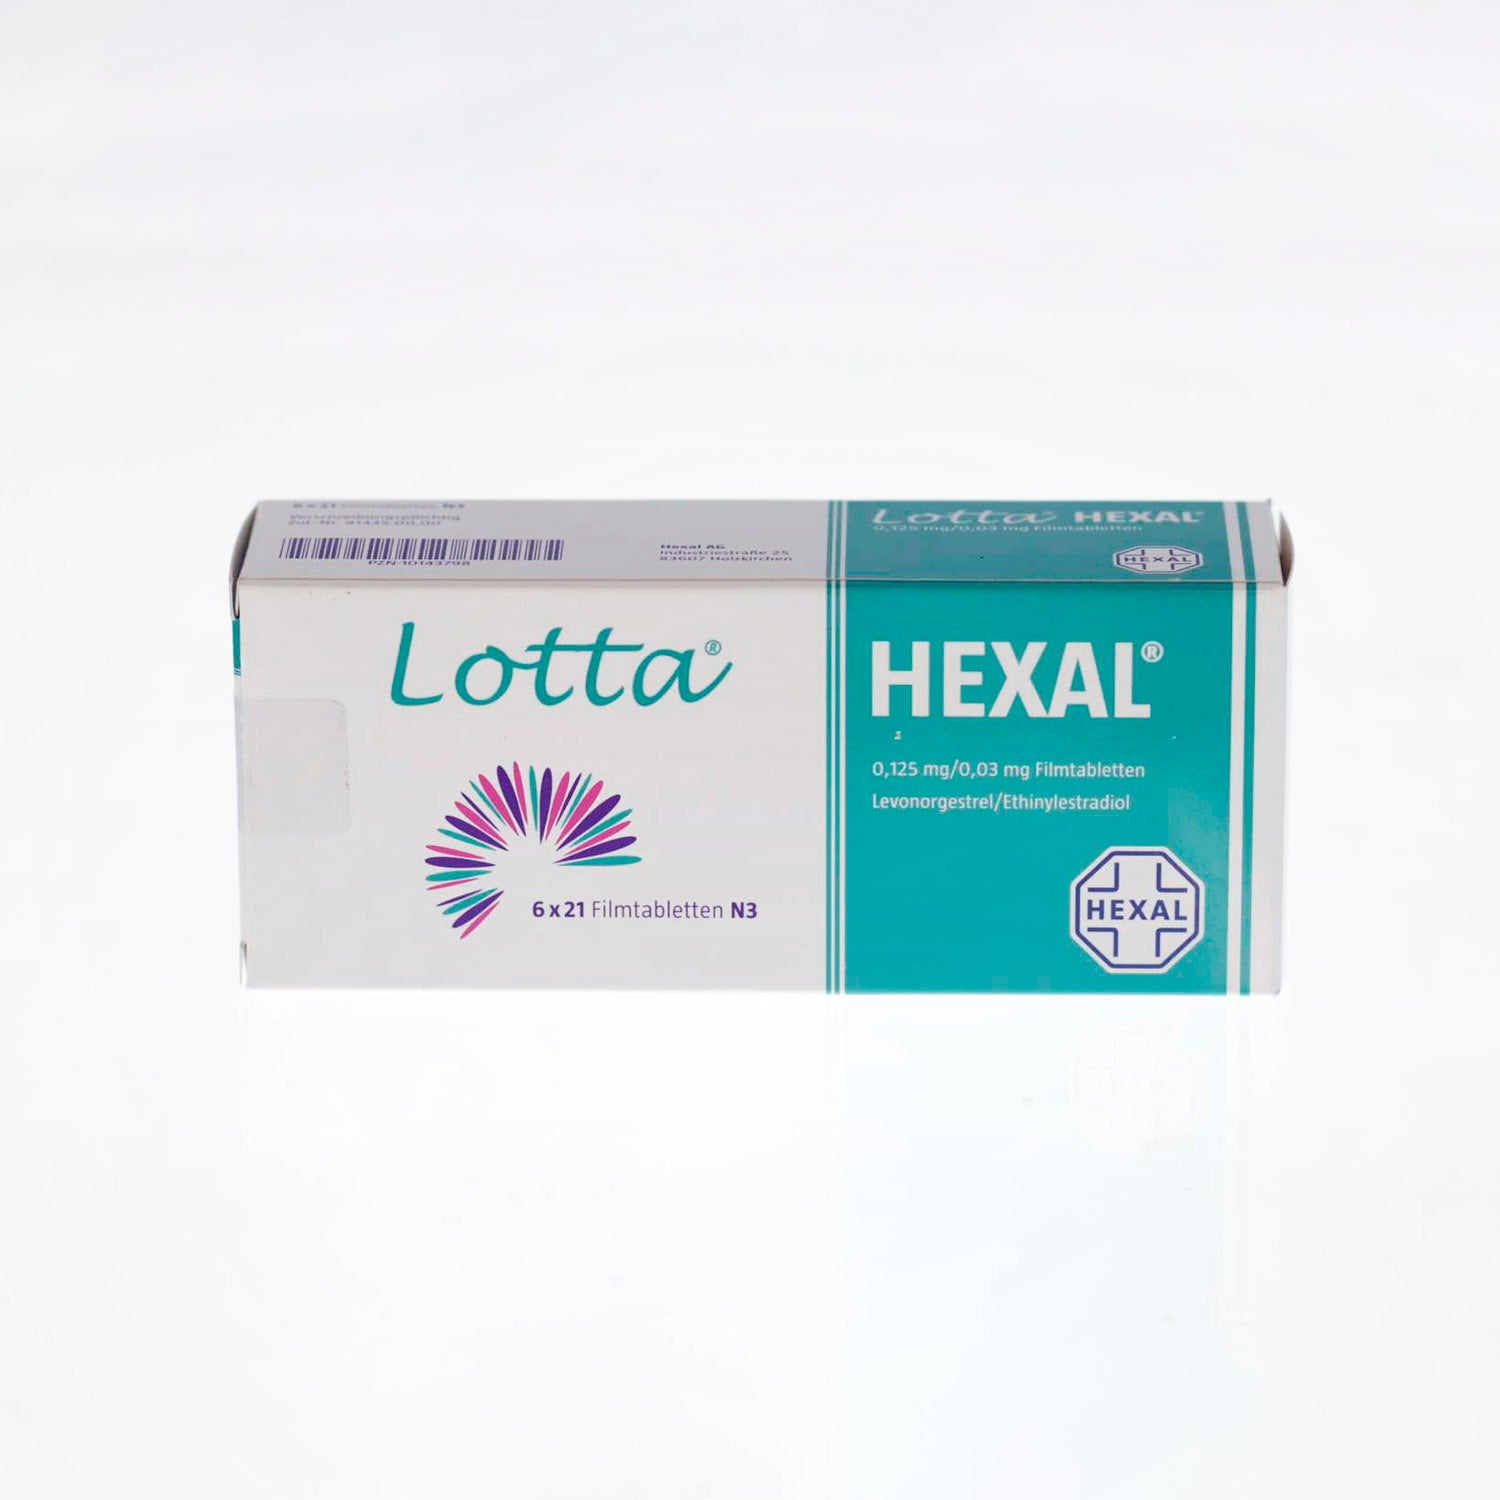 Lotta Hexal 0.125mg/0.03mg